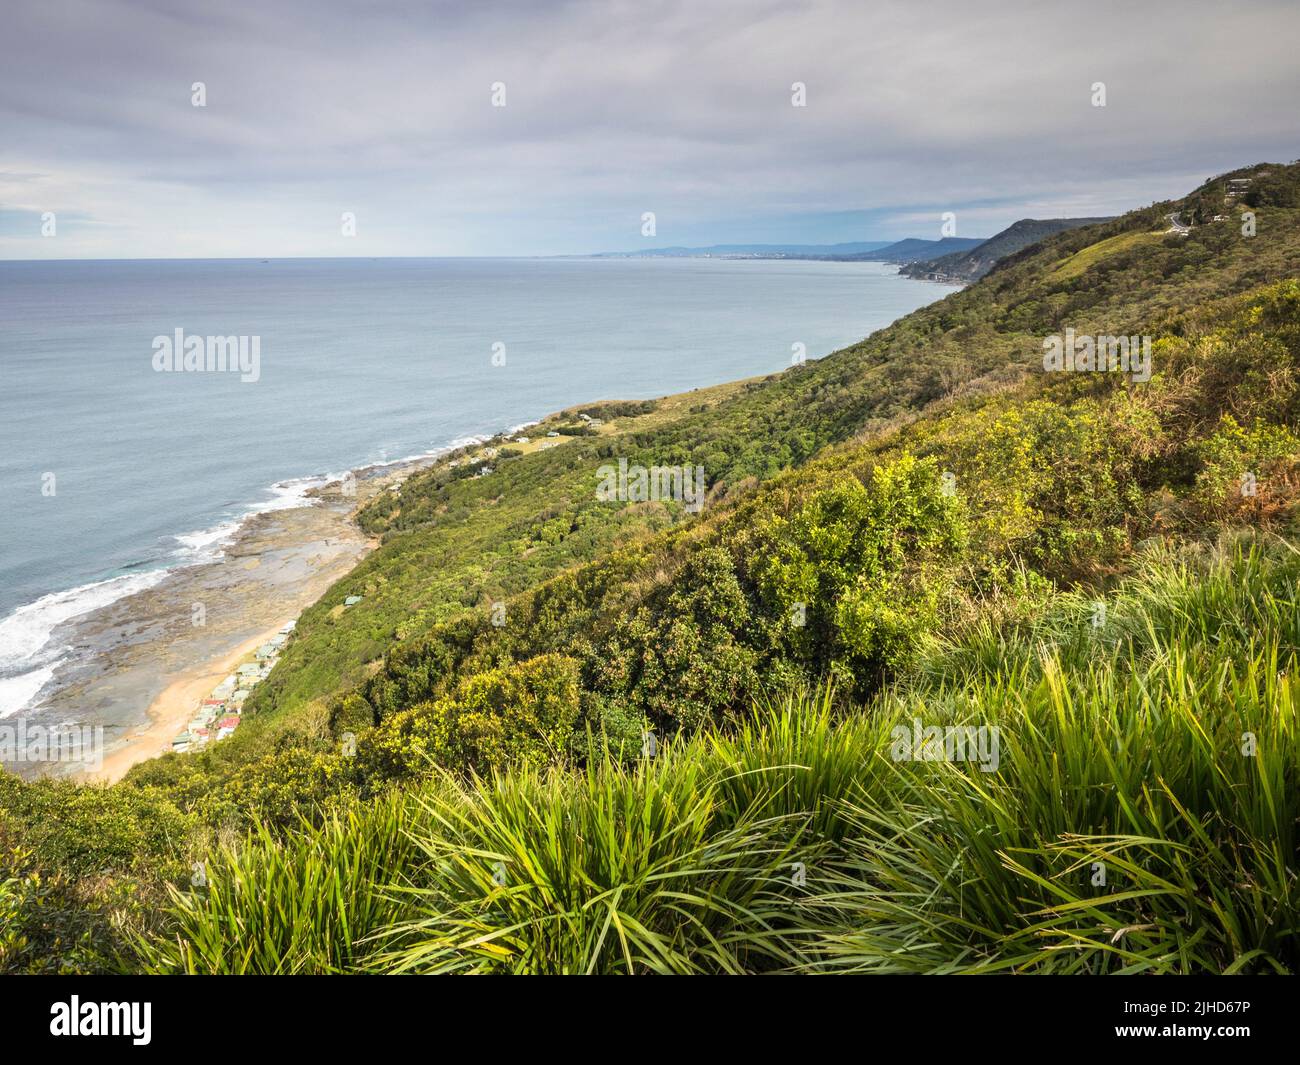 La plage de Werresg et les promontoires de l'escarpement d'Illawarra s'étendent au-dessus de la mer de Tasman depuis Otford, à l'extrémité sud de la piste côtière de Sydney. Banque D'Images